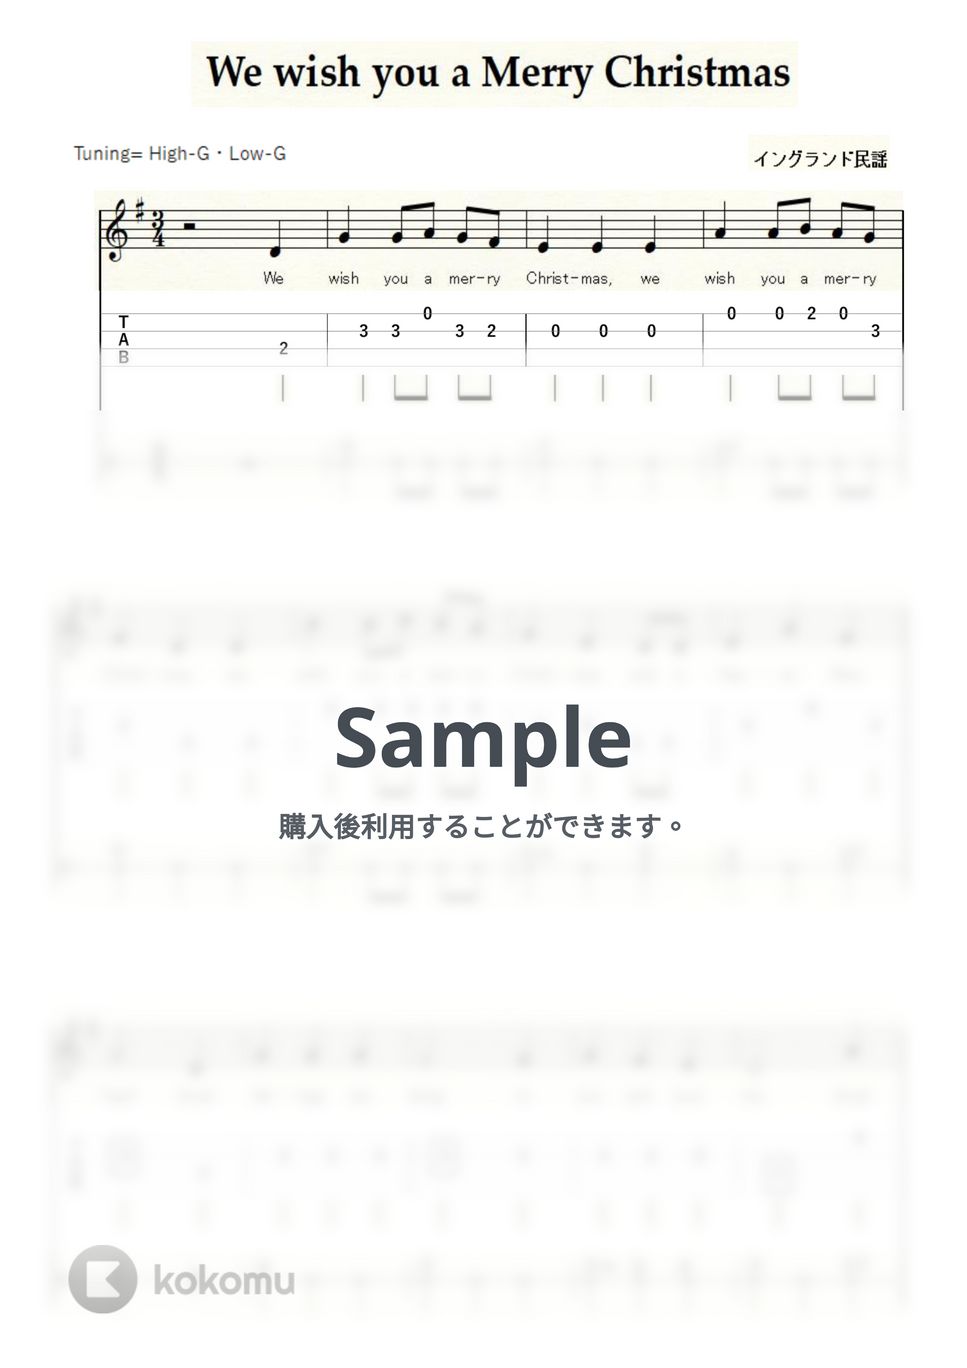 イングランド民謡 - We wish you a Merry Chiristmas (ウクレレ二重奏/High-G,Low-G/初級) by ukulelepapa